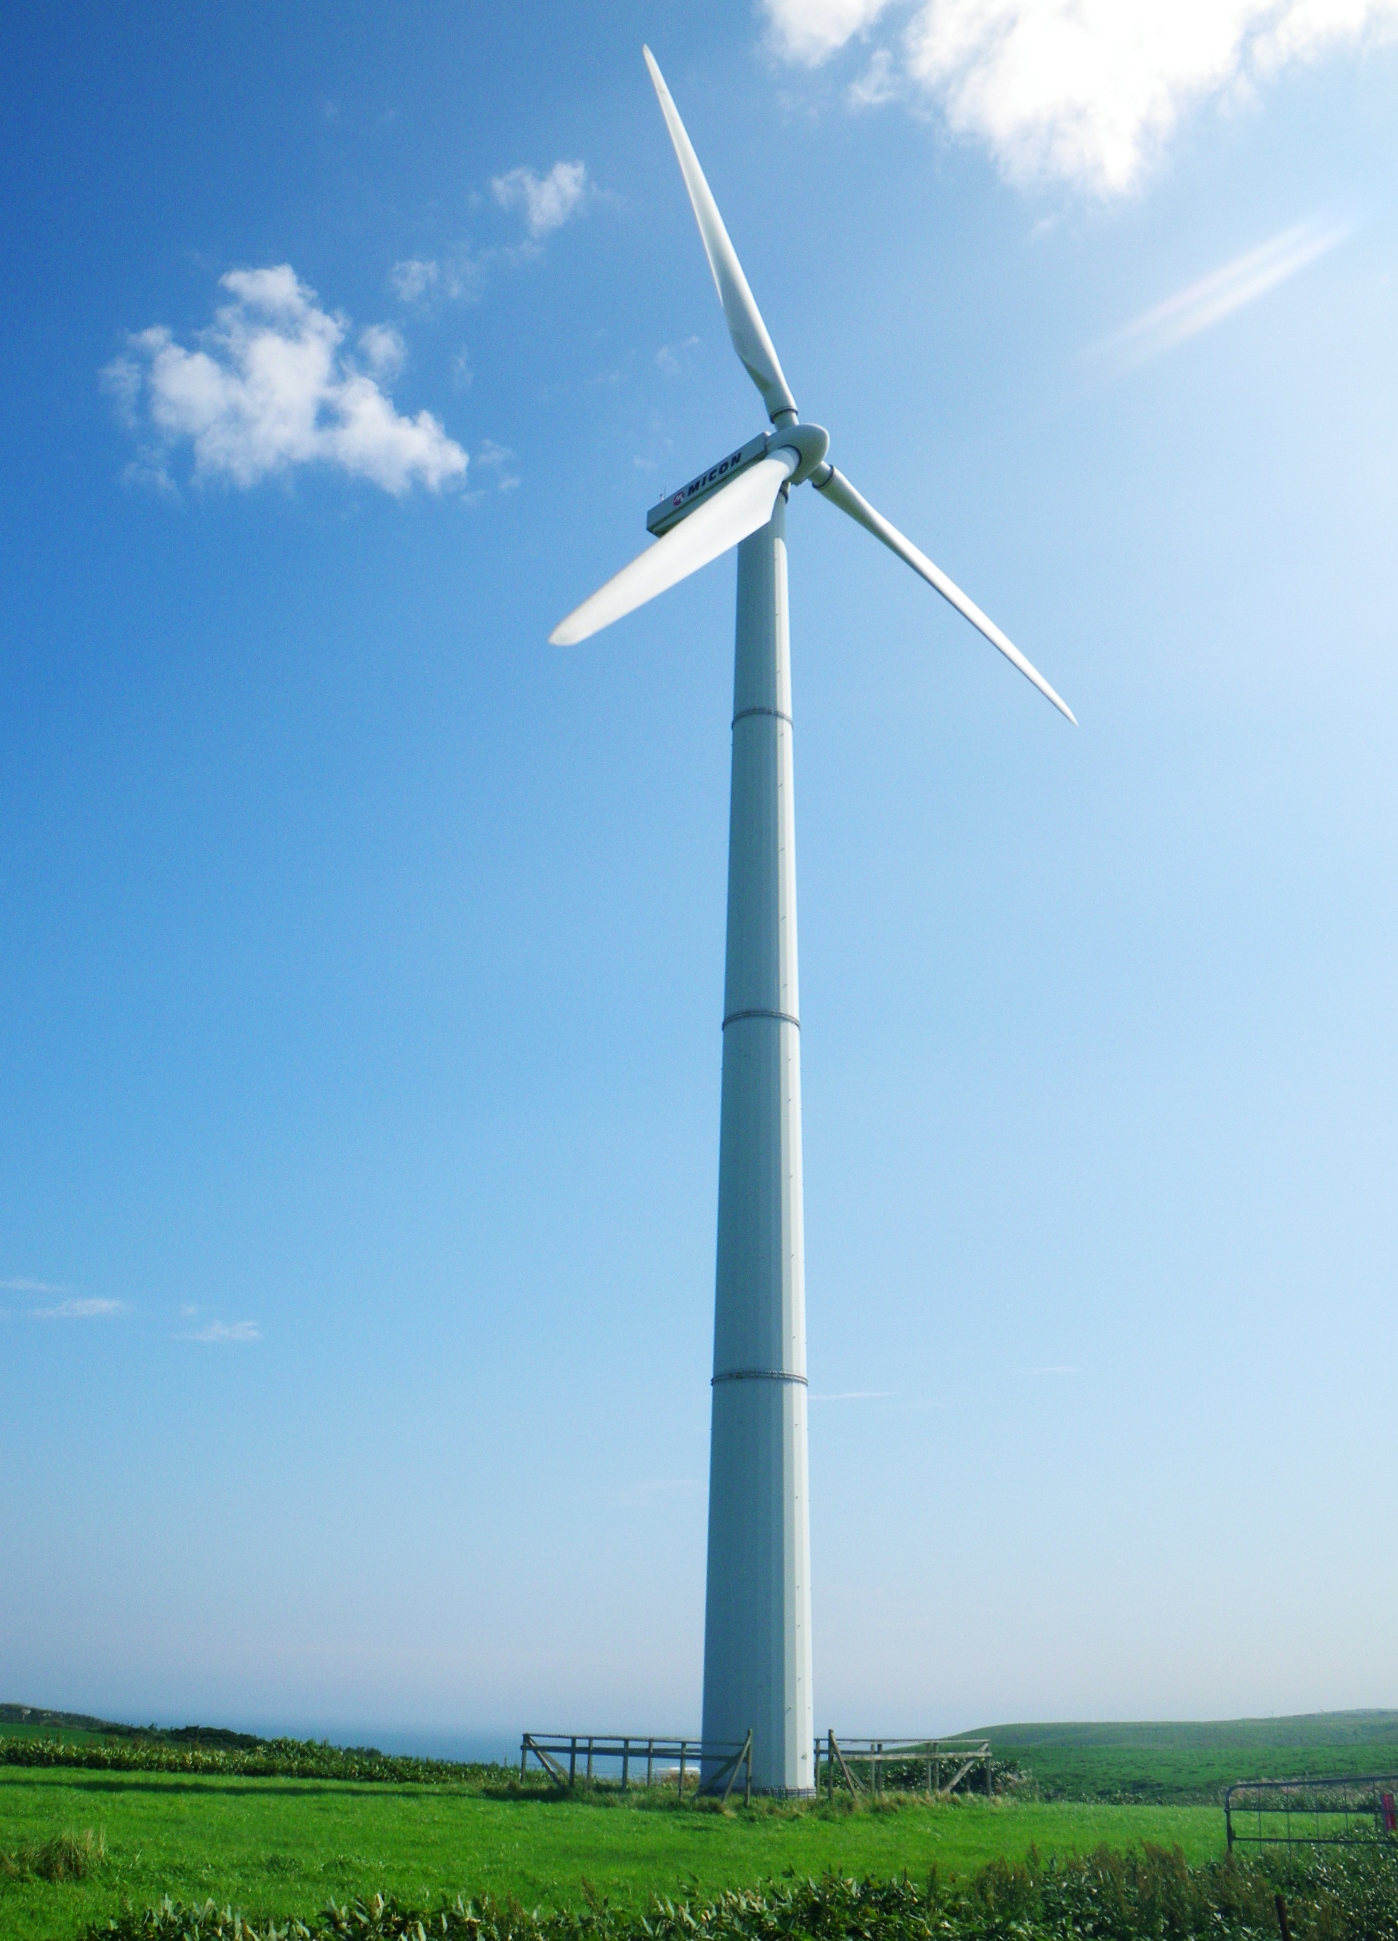 日本風力開発株式会社